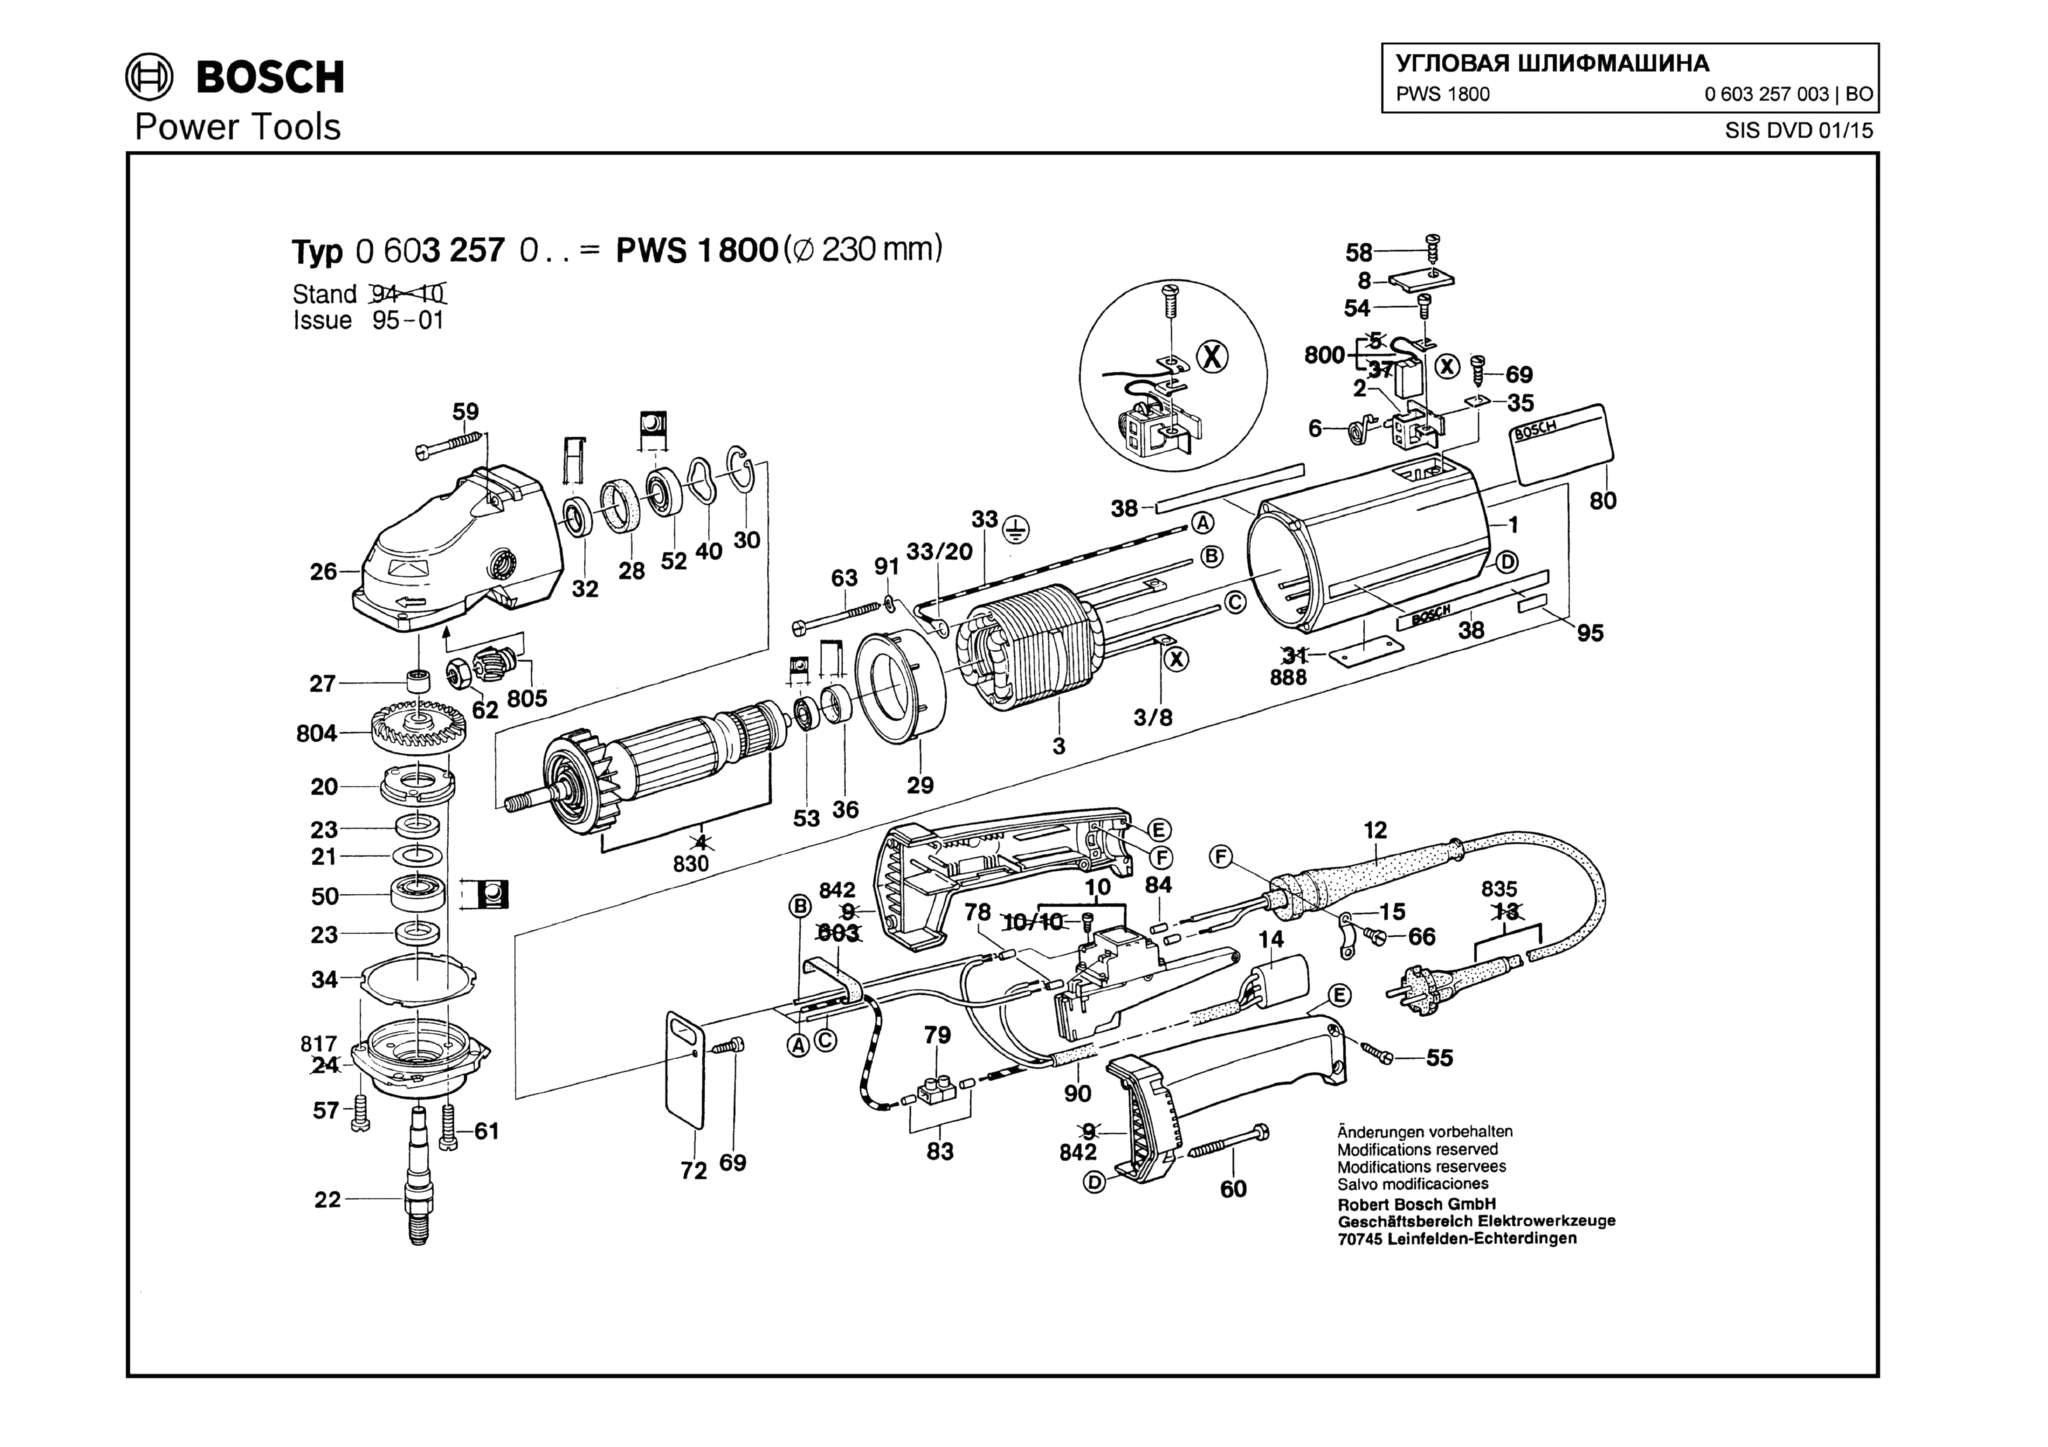 Запчасти, схема и деталировка Bosch PWS 1800 (ТИП 0603257003)